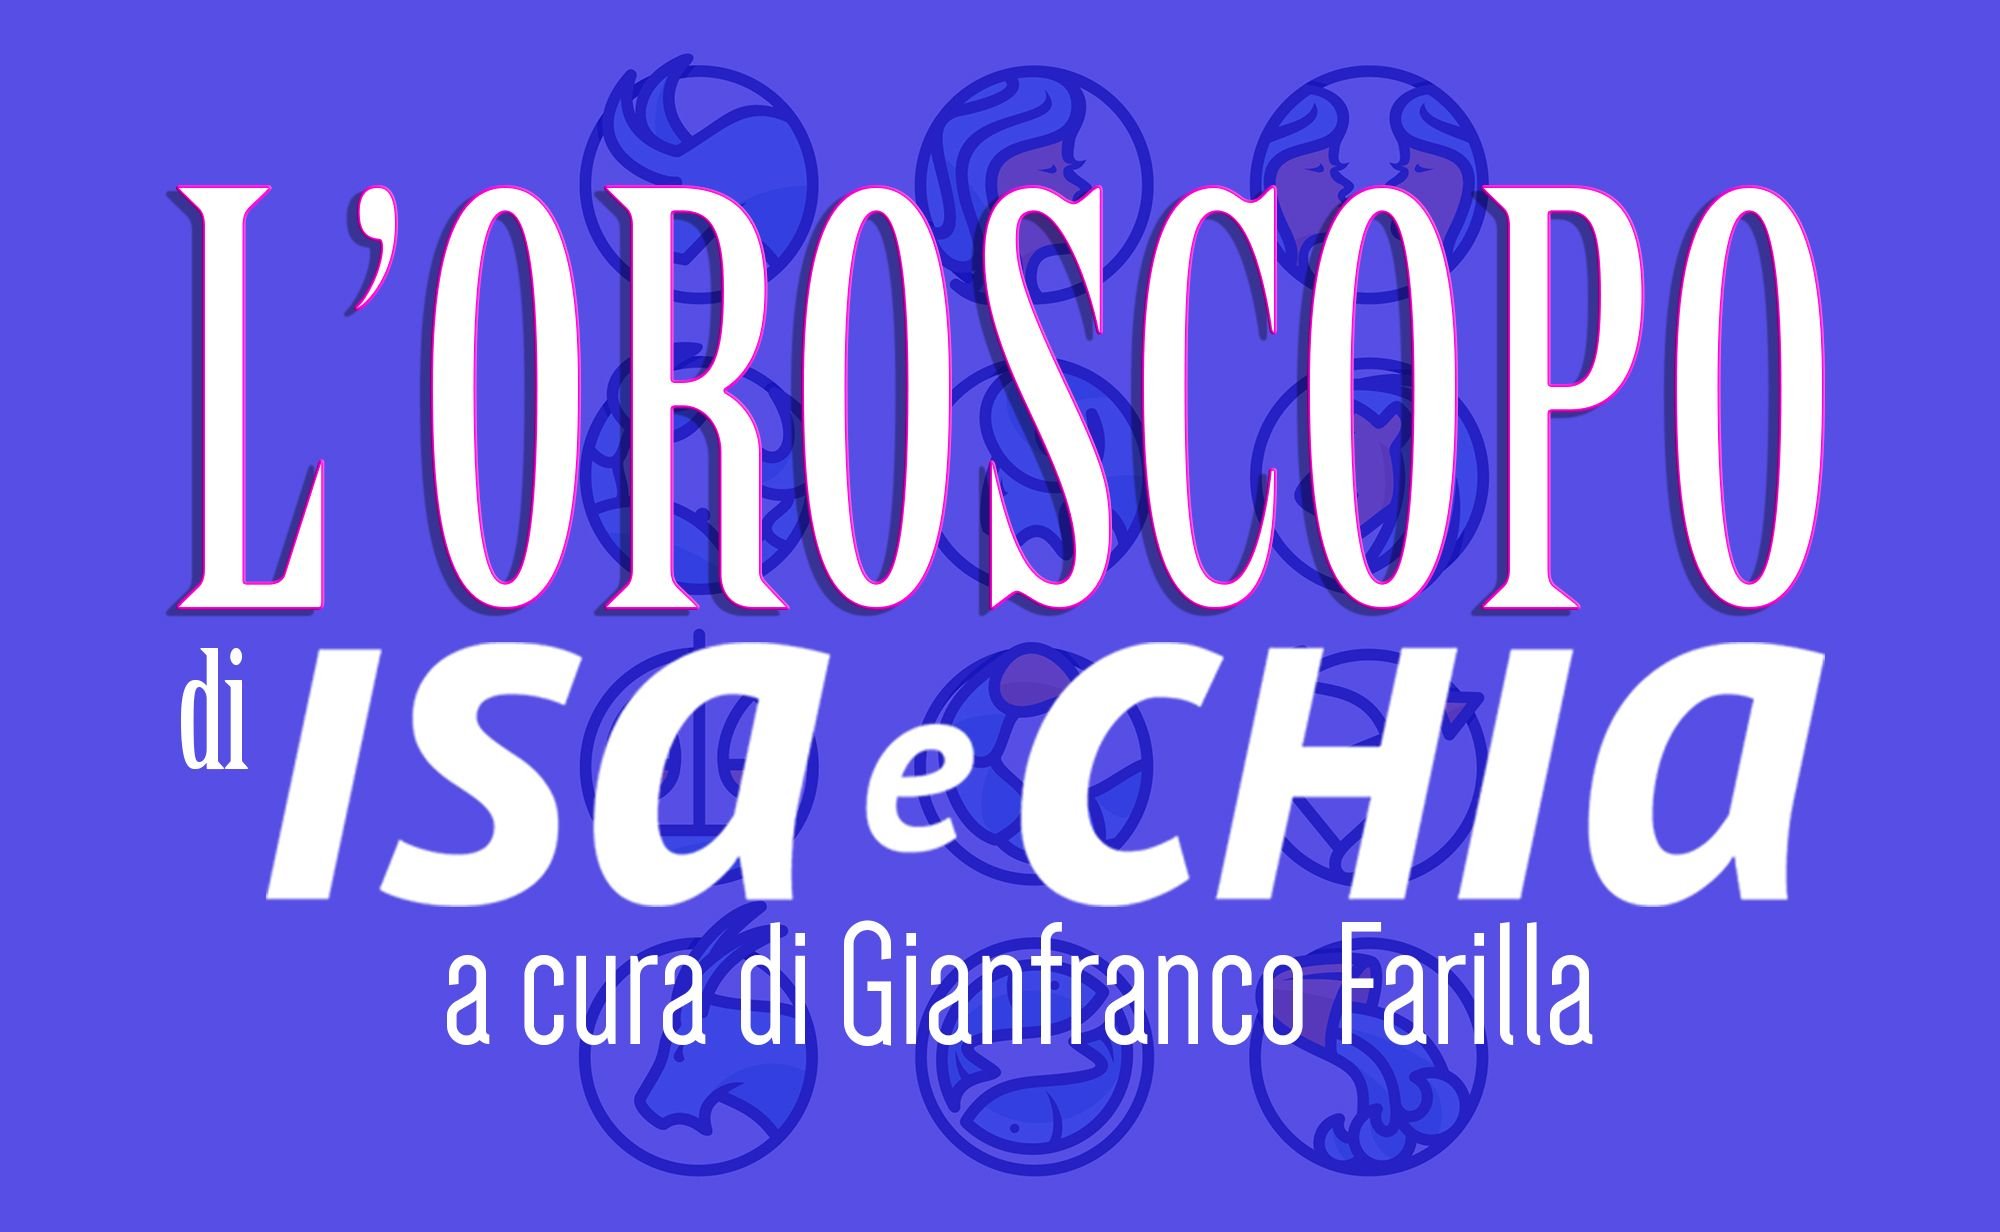 ‘L’oroscopo di Isa e Chia’ dal 10 al 16 settembre (a cura di Gianfranco Farilla)